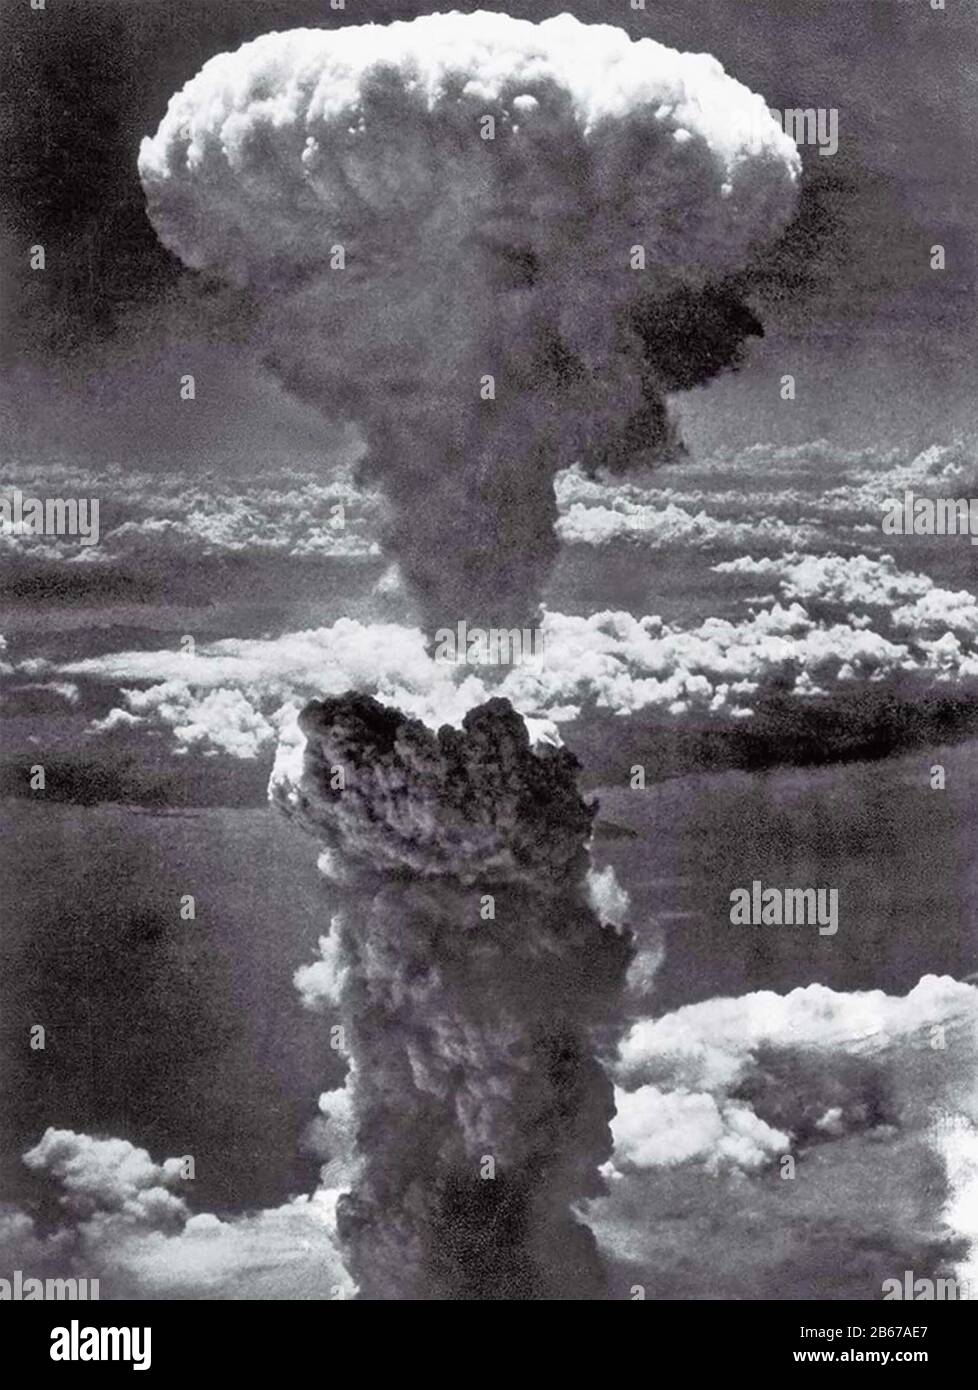 BOMBE ATOMIQUE NAGASAKI 9 AOÛT 1945. La bombe Fat Man envoie un nuage de poussière de 45 000 pieds.photo : USAAF bombardier Lieutenant Charles Levy Banque D'Images